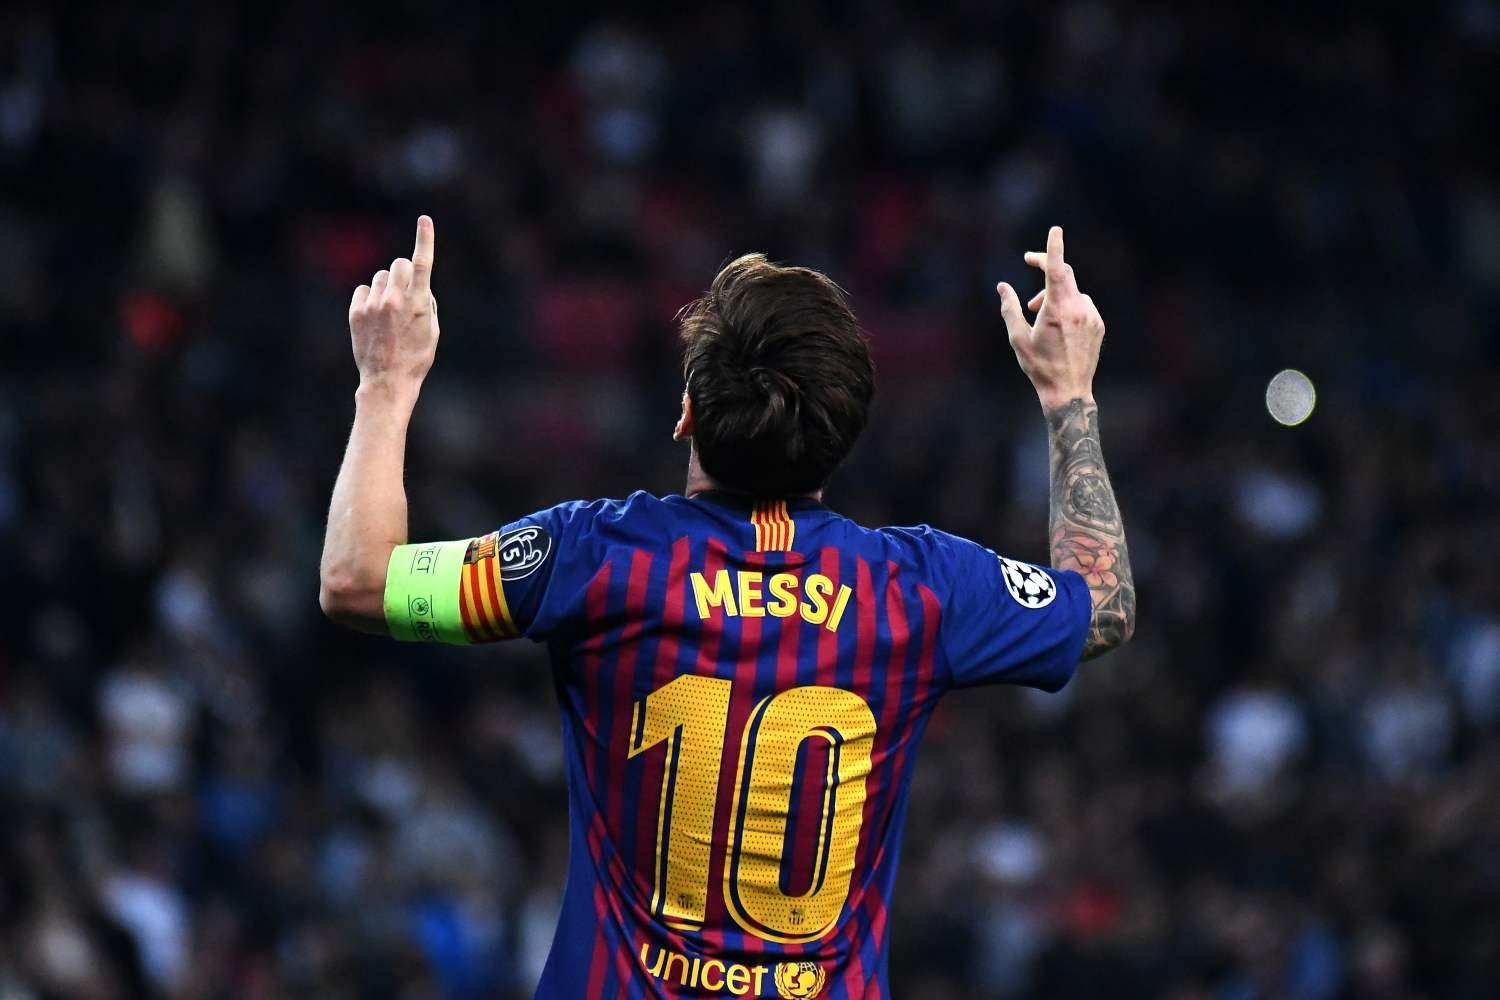 Messi zaplanował przyszłość?! FC Barcelona do 2023 roku i potem